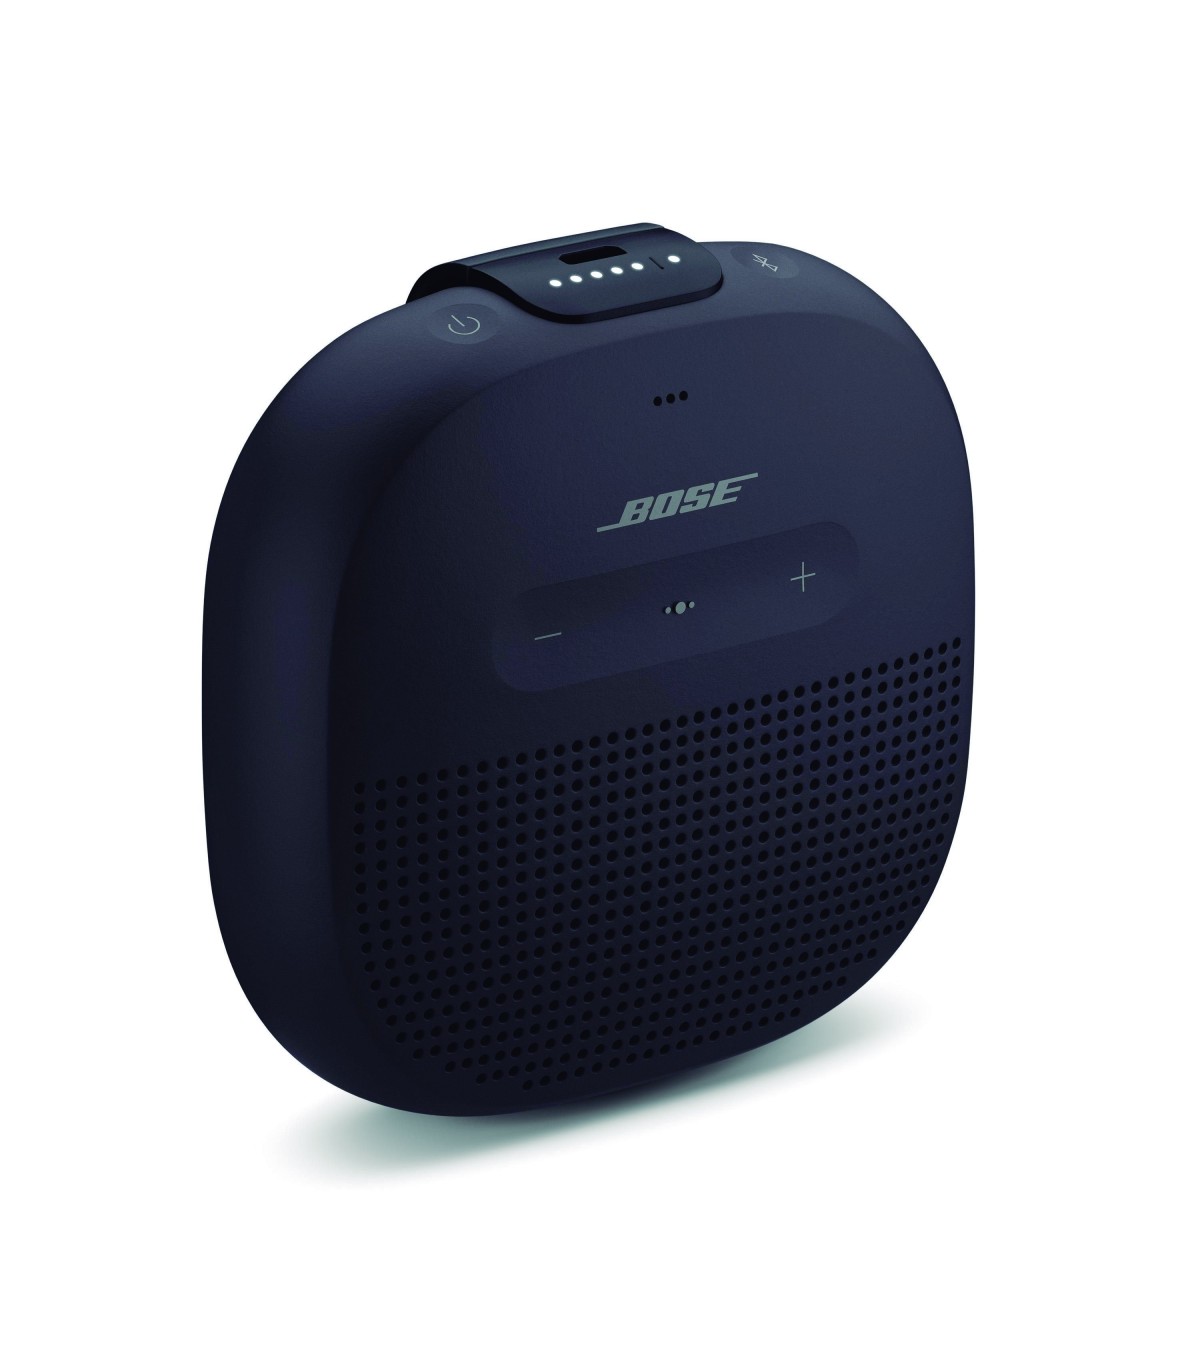 Altavoz Bluetooth Bose SoundLink Micro. Envíos gratuitos. Garantía